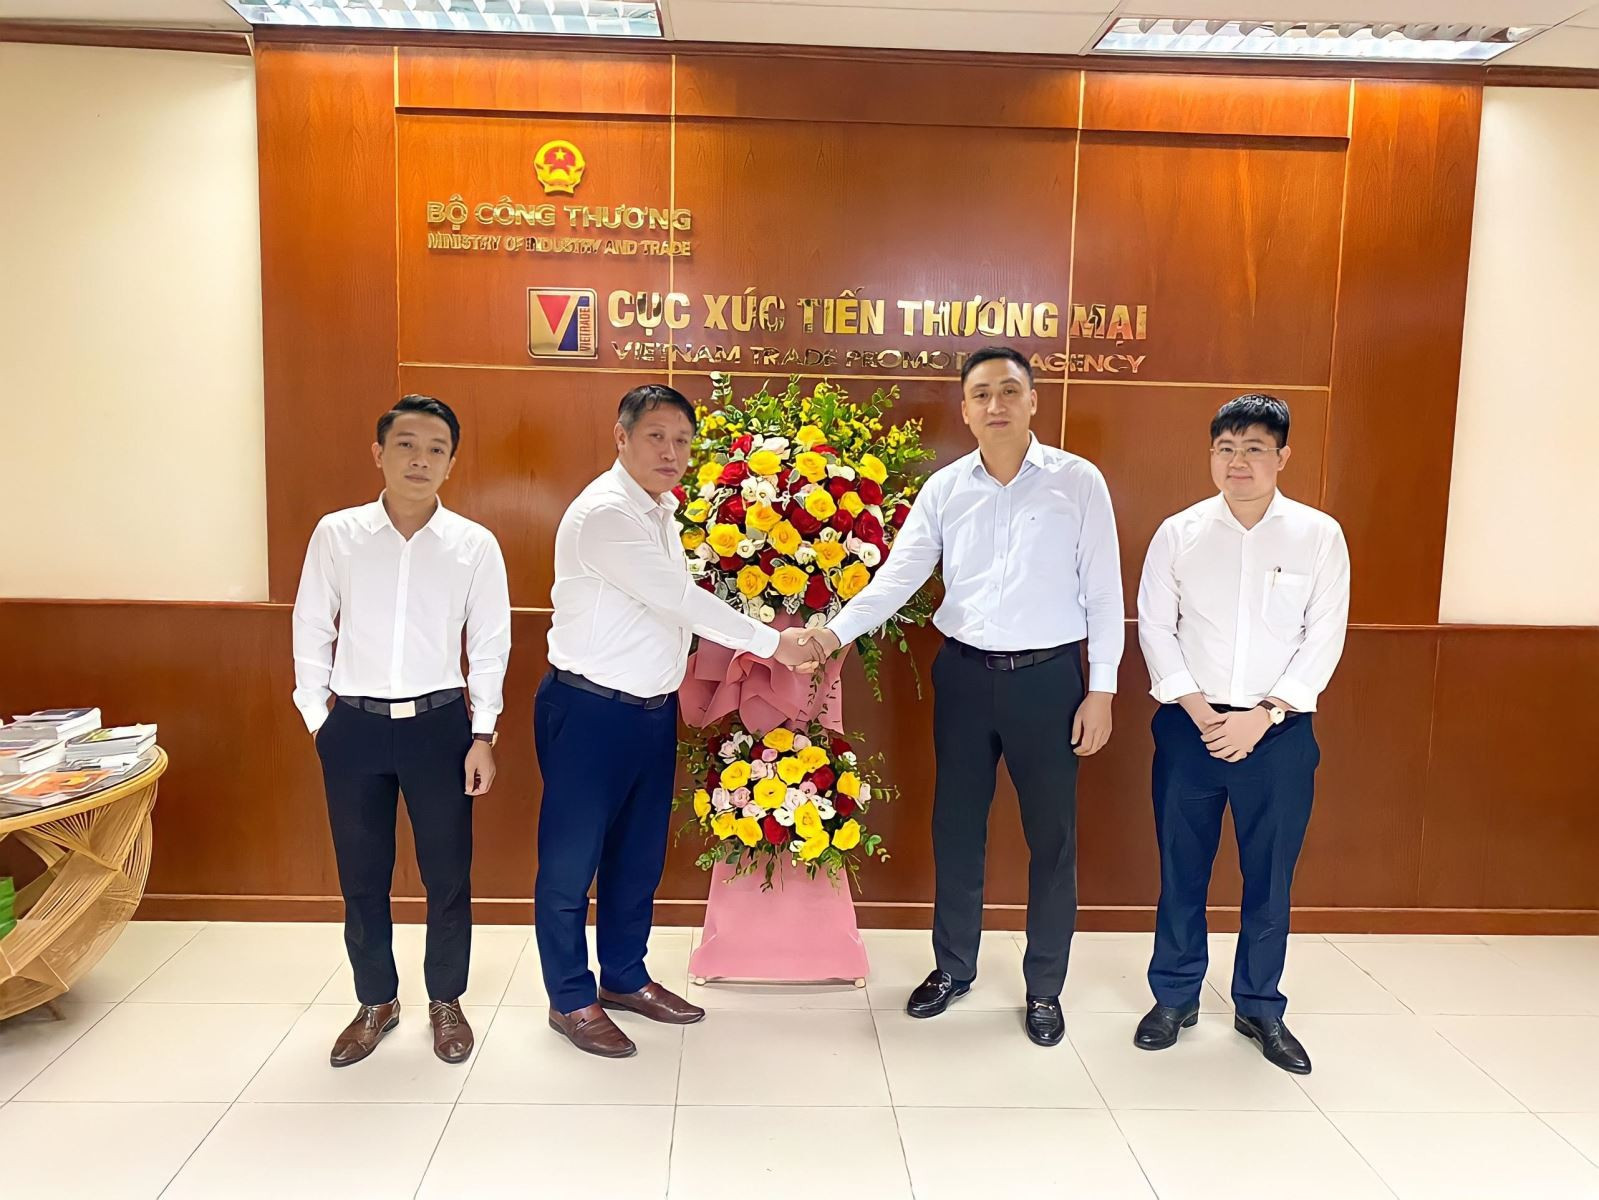 Đại diện Bản tin Thị trường Việt Nam tặng hoa và chúc mừng Đại diện Cục XTTM, Phó Cục trưởng Hoàng Minh Chiến